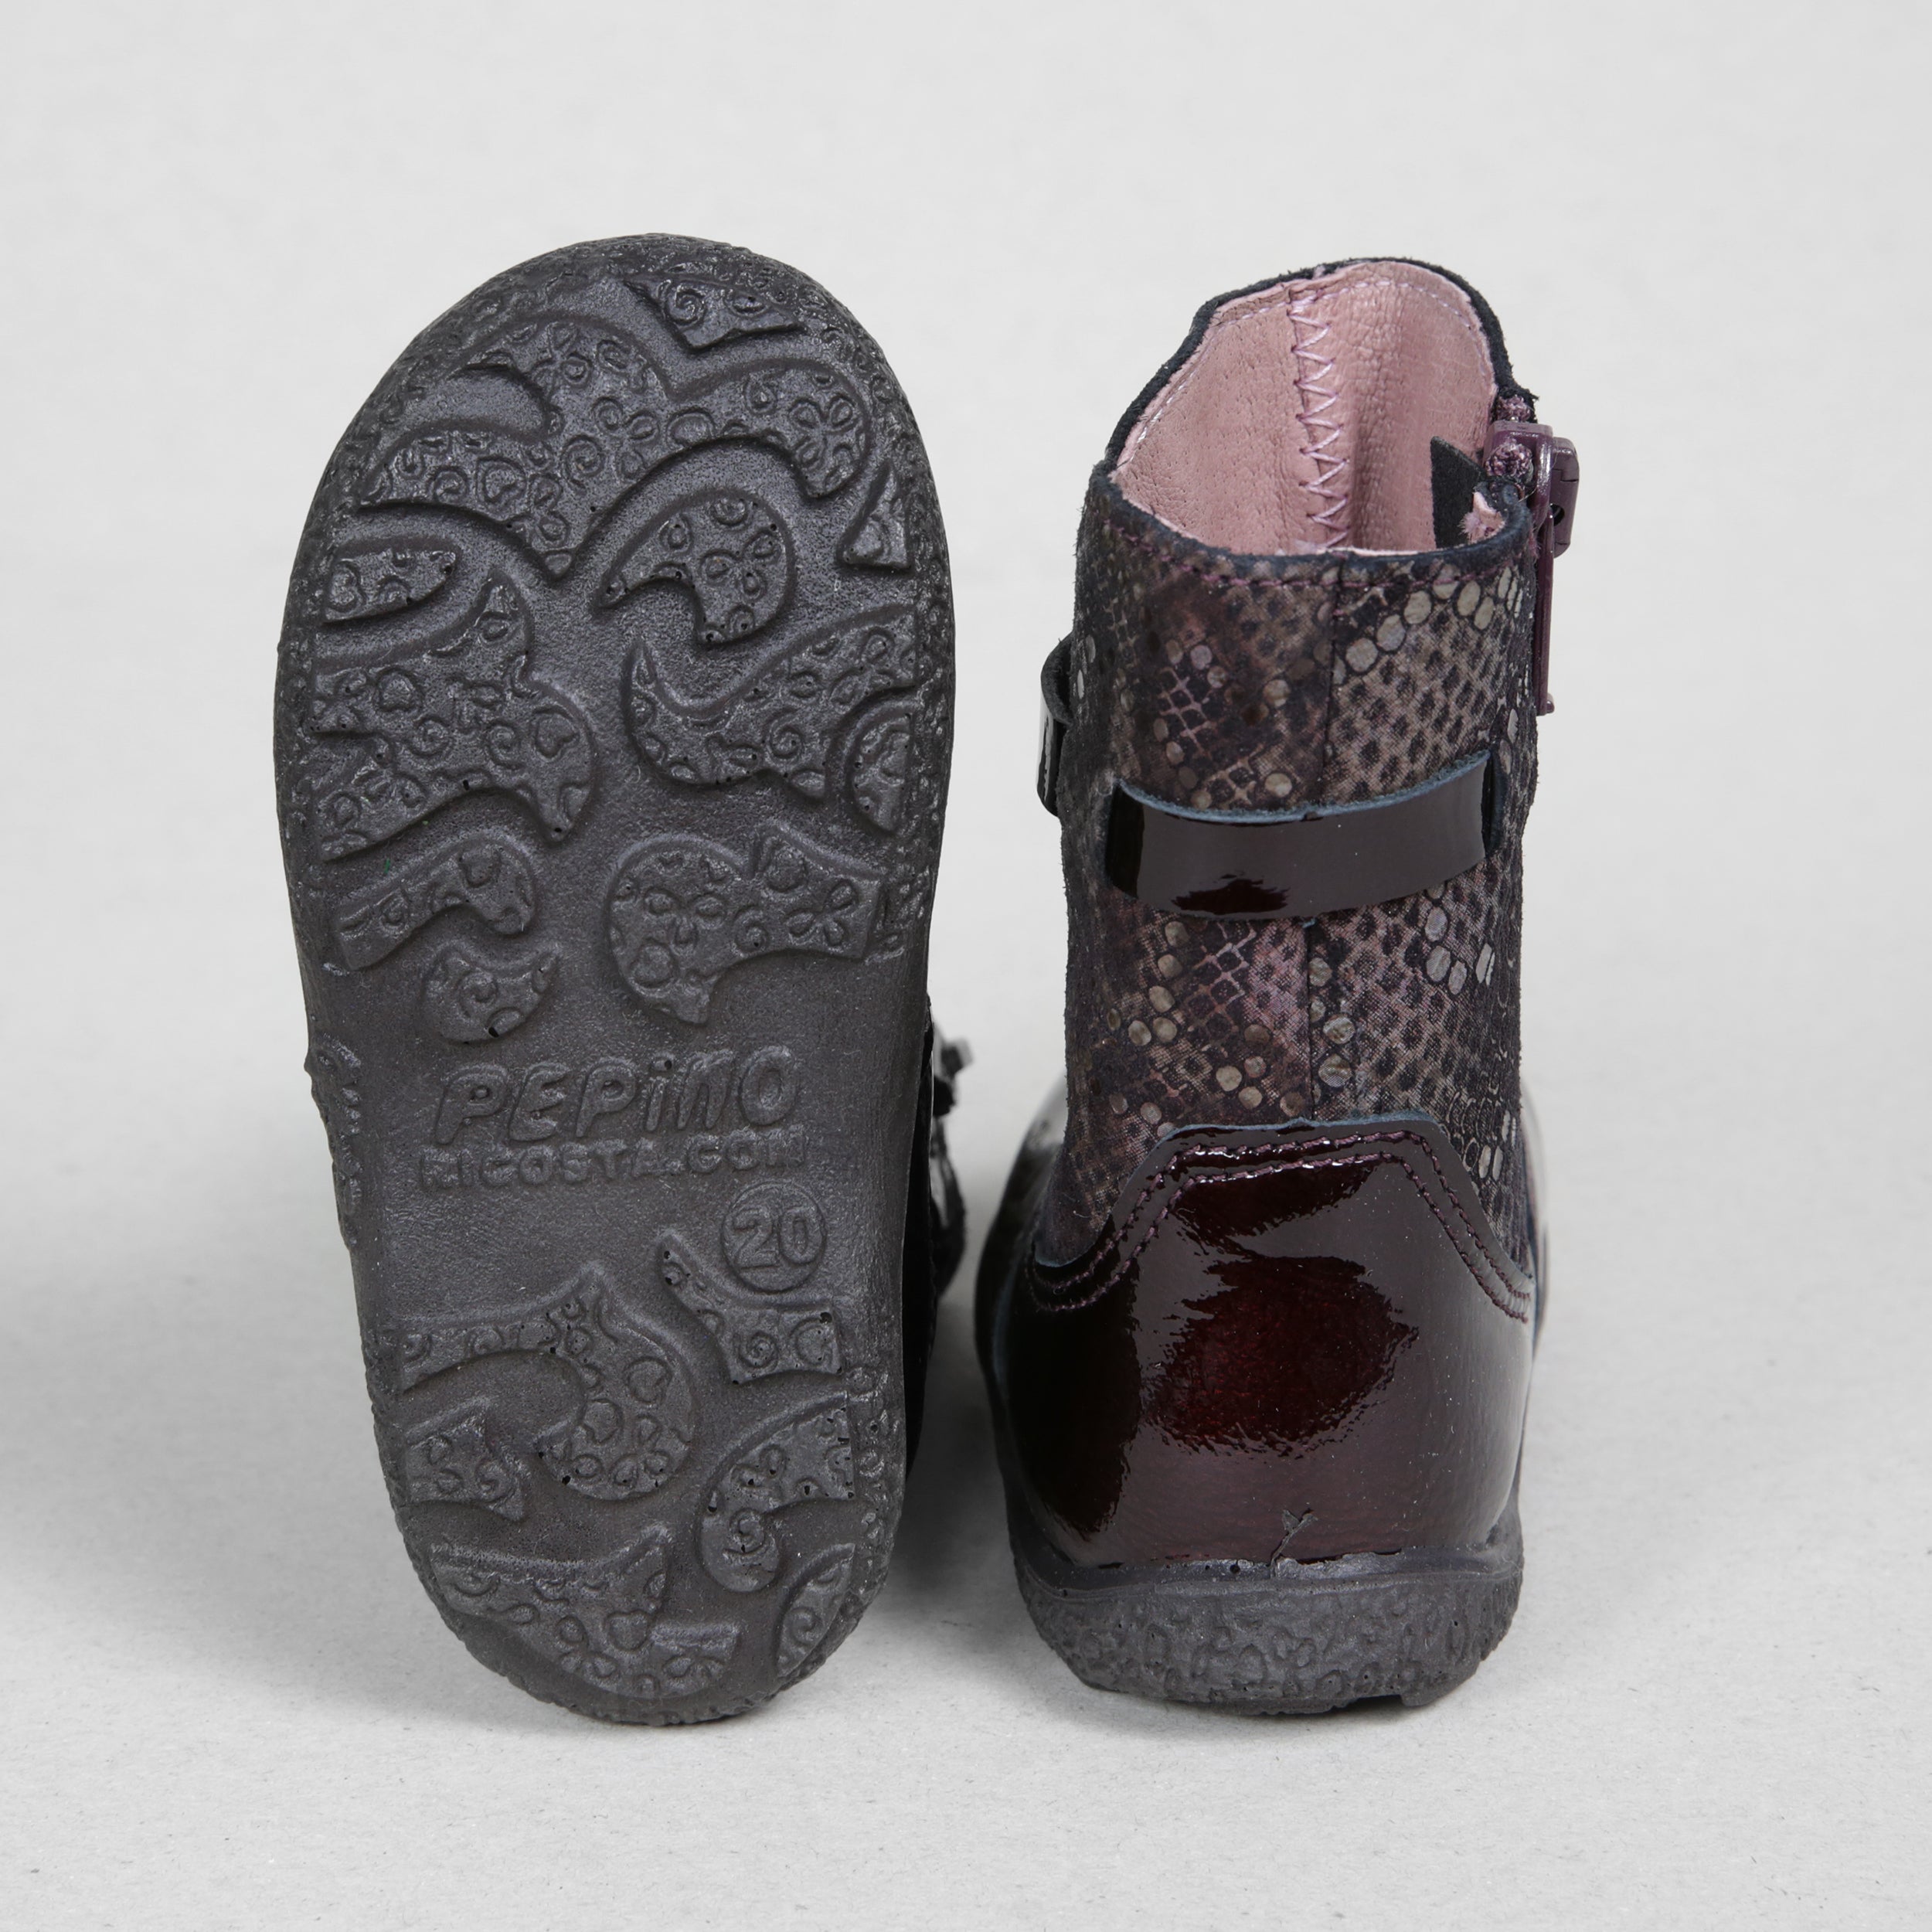 Ricosta Sanji Kids Burgundy Leather Boots